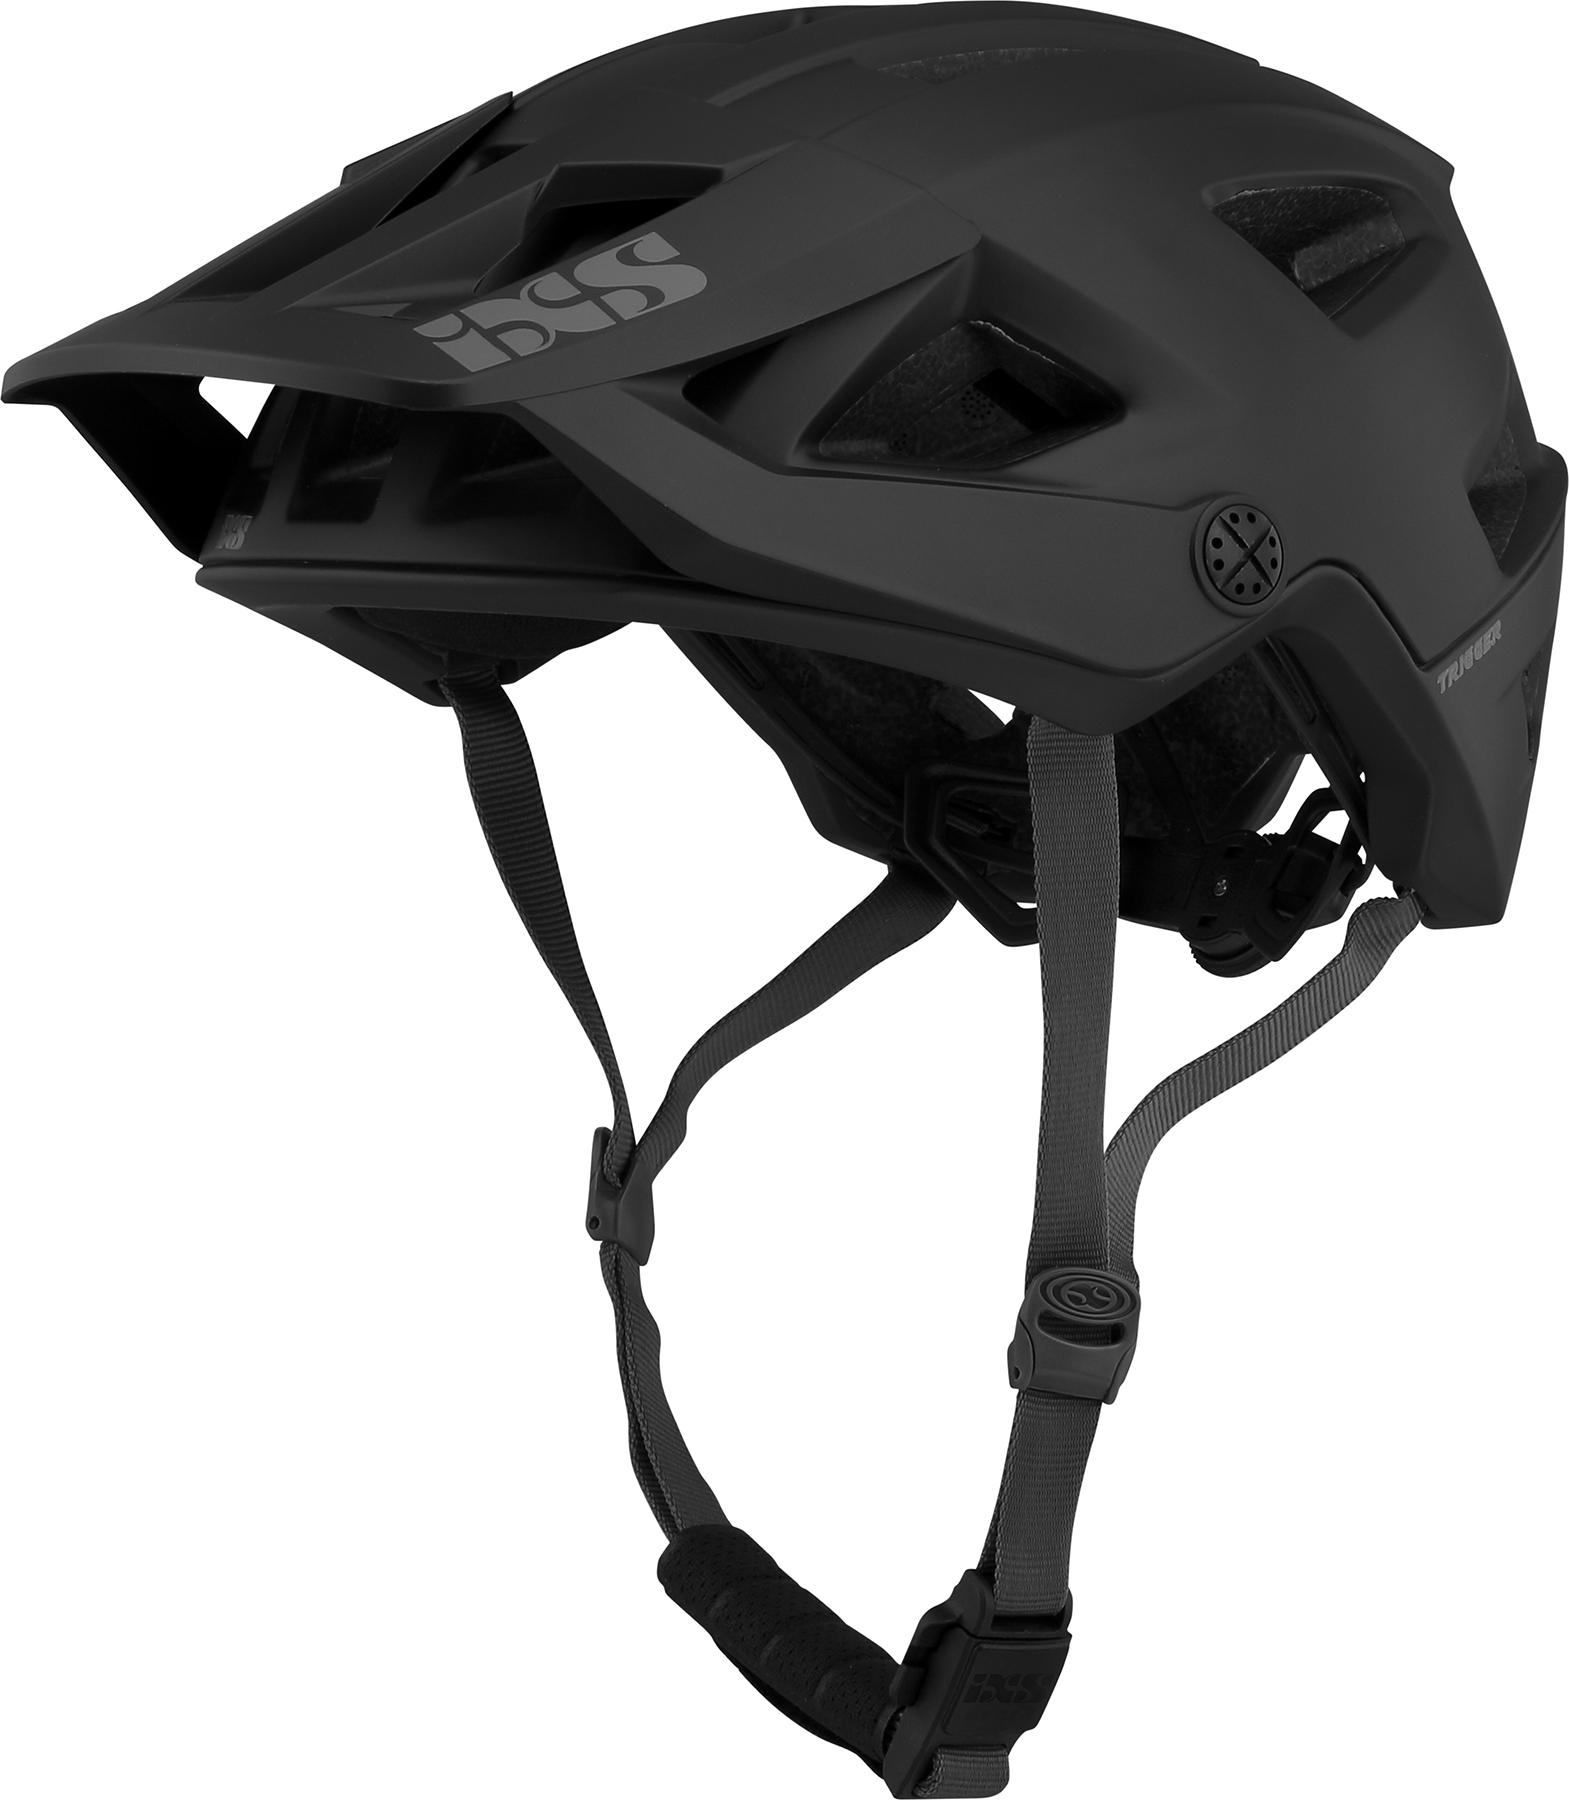 Ixs Trigger Am Helmet - Black